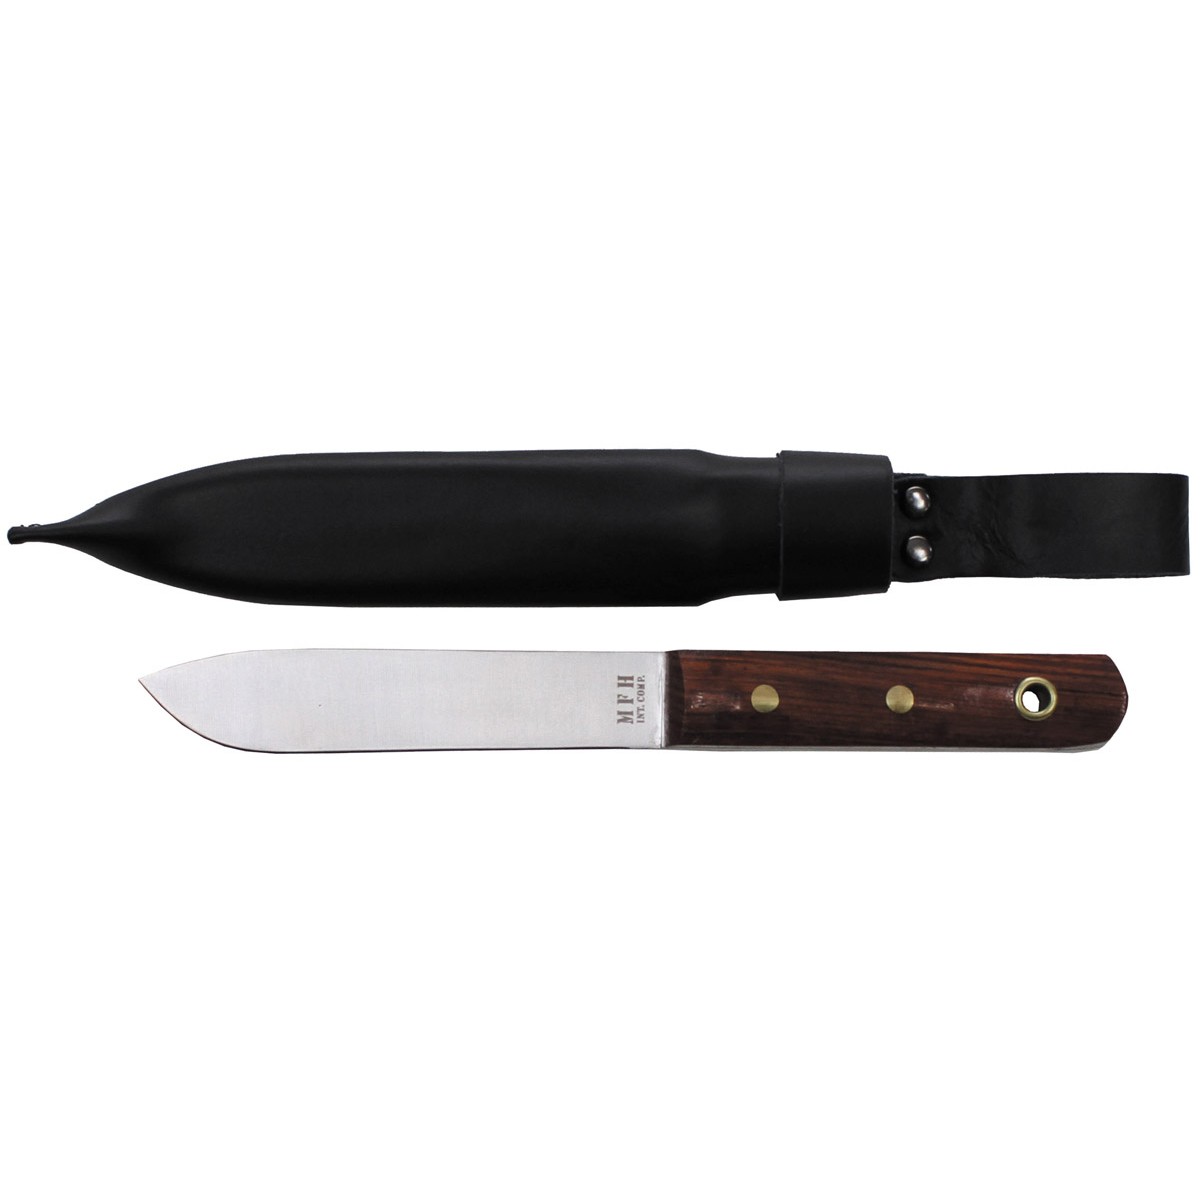 Nůž MFH BW Matrosen s dřevěnou rukojetí - hnědý-stříbrný (18+)